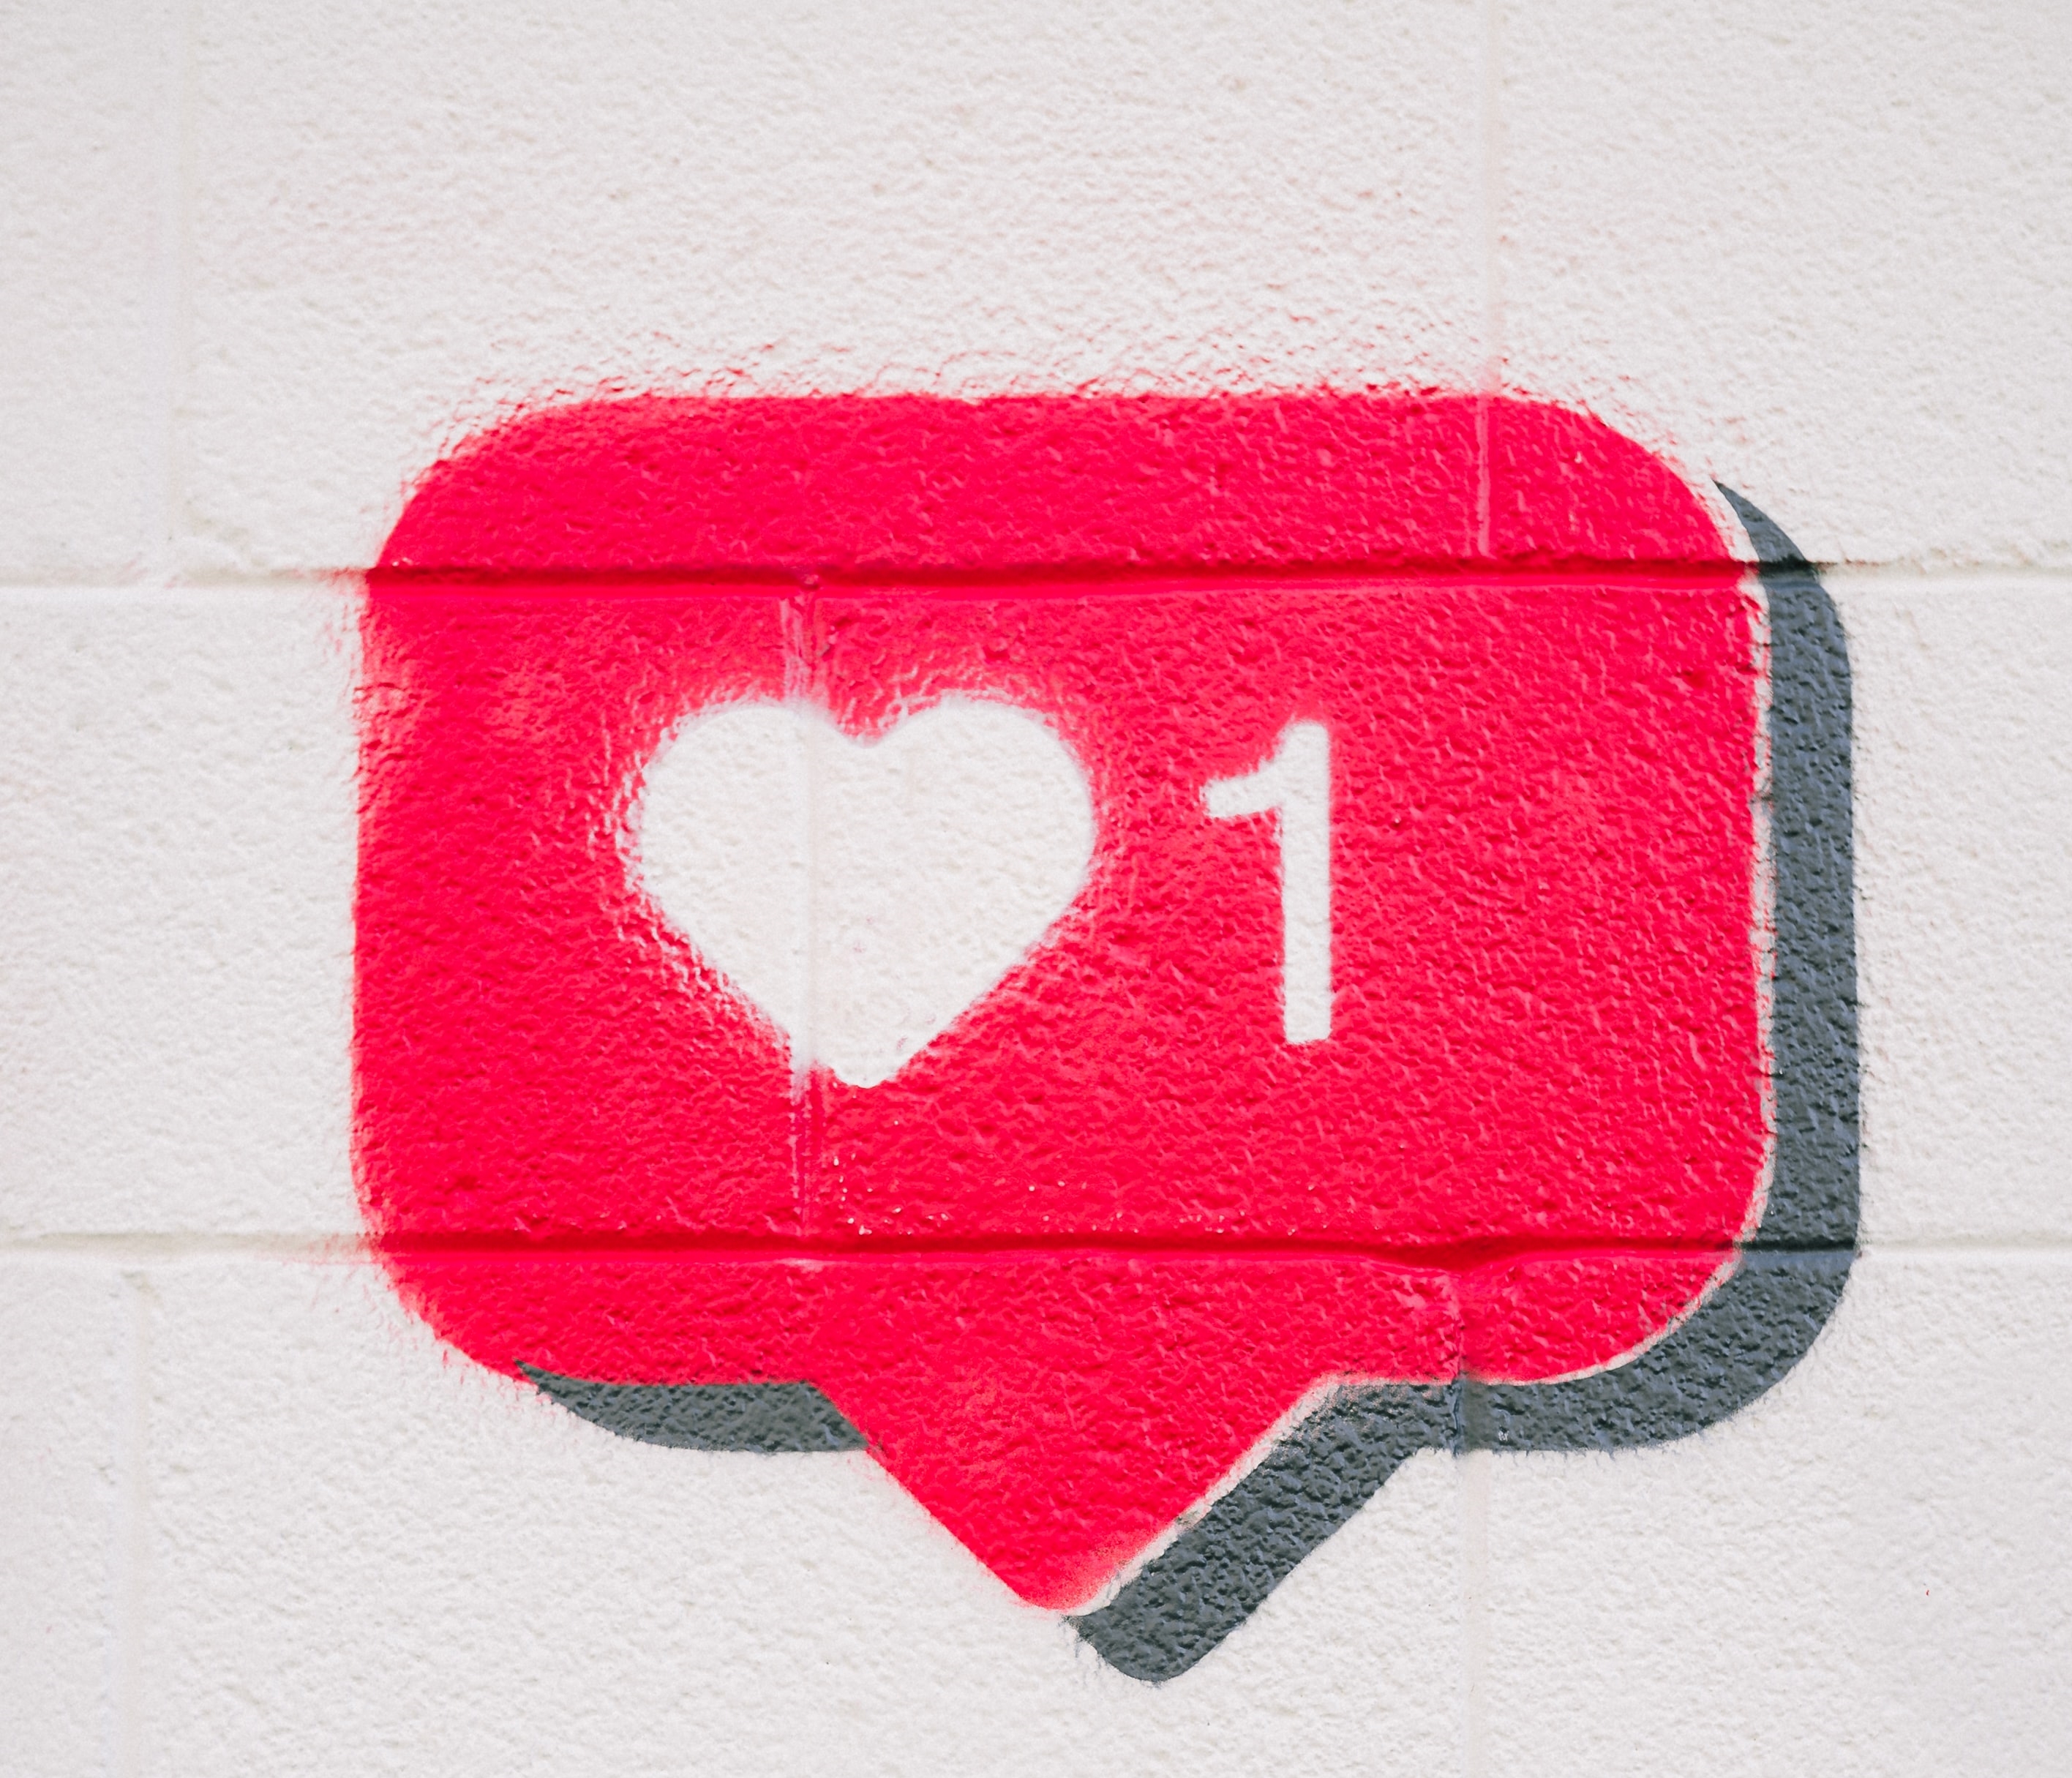 Bildliche Darstellung eines Symbols eines sogenannten Likes durch eine rote Sprechblase mit einem weißen Herzchen und einer weißen Eins drauf.